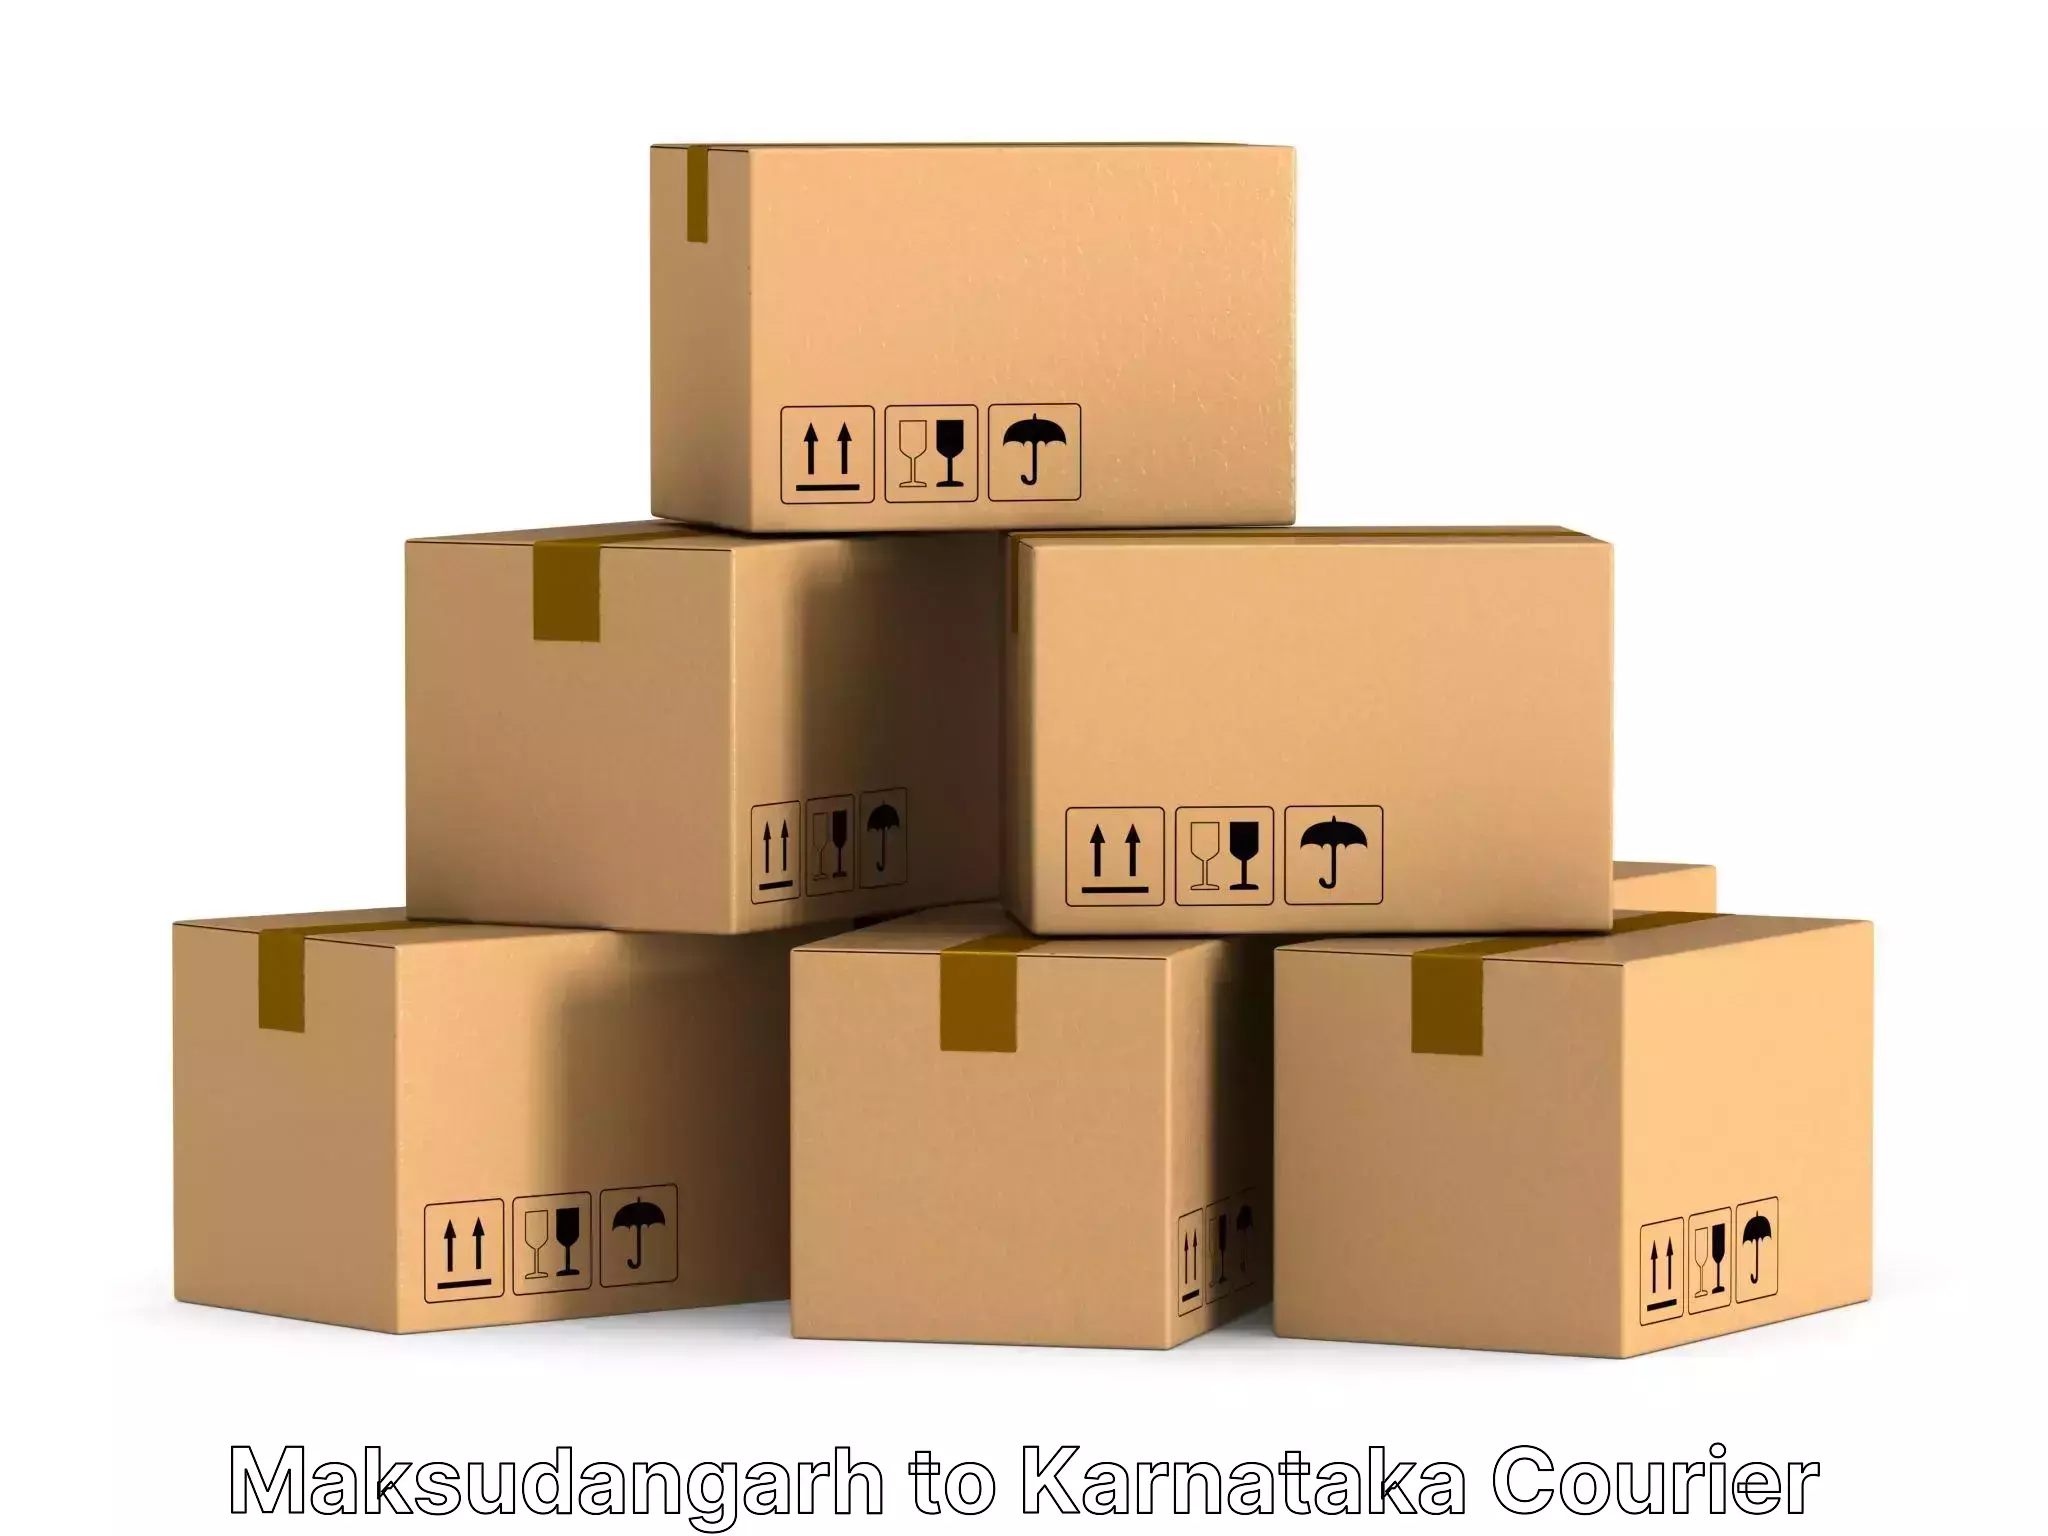 Residential furniture transport Maksudangarh to Karnataka